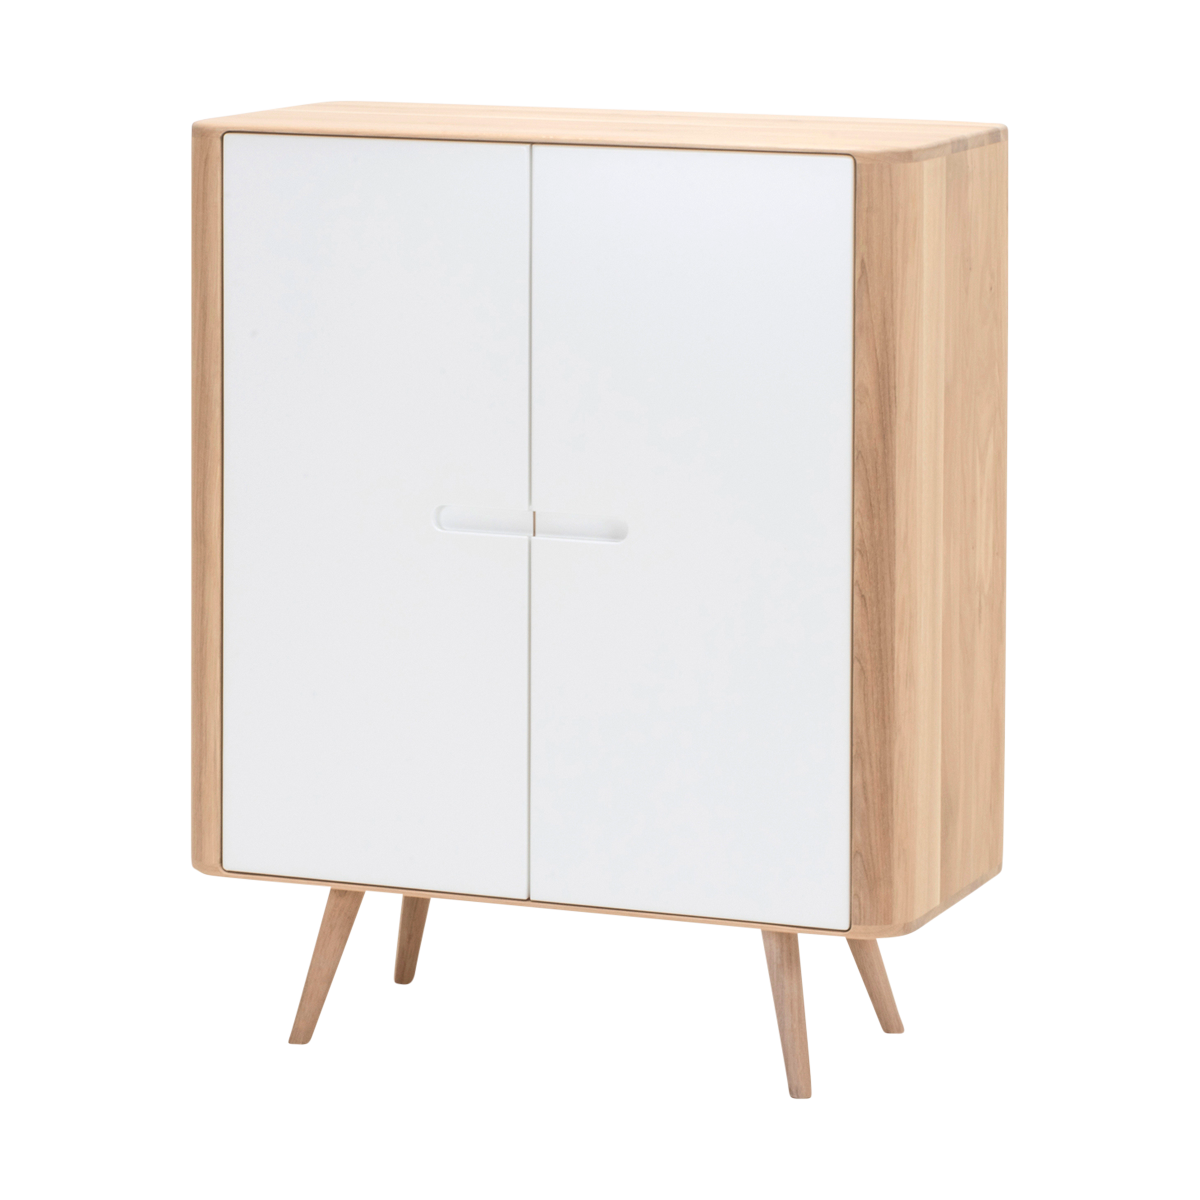 Ena cabinet houten opbergkast whitewash - 90 x 110 cm